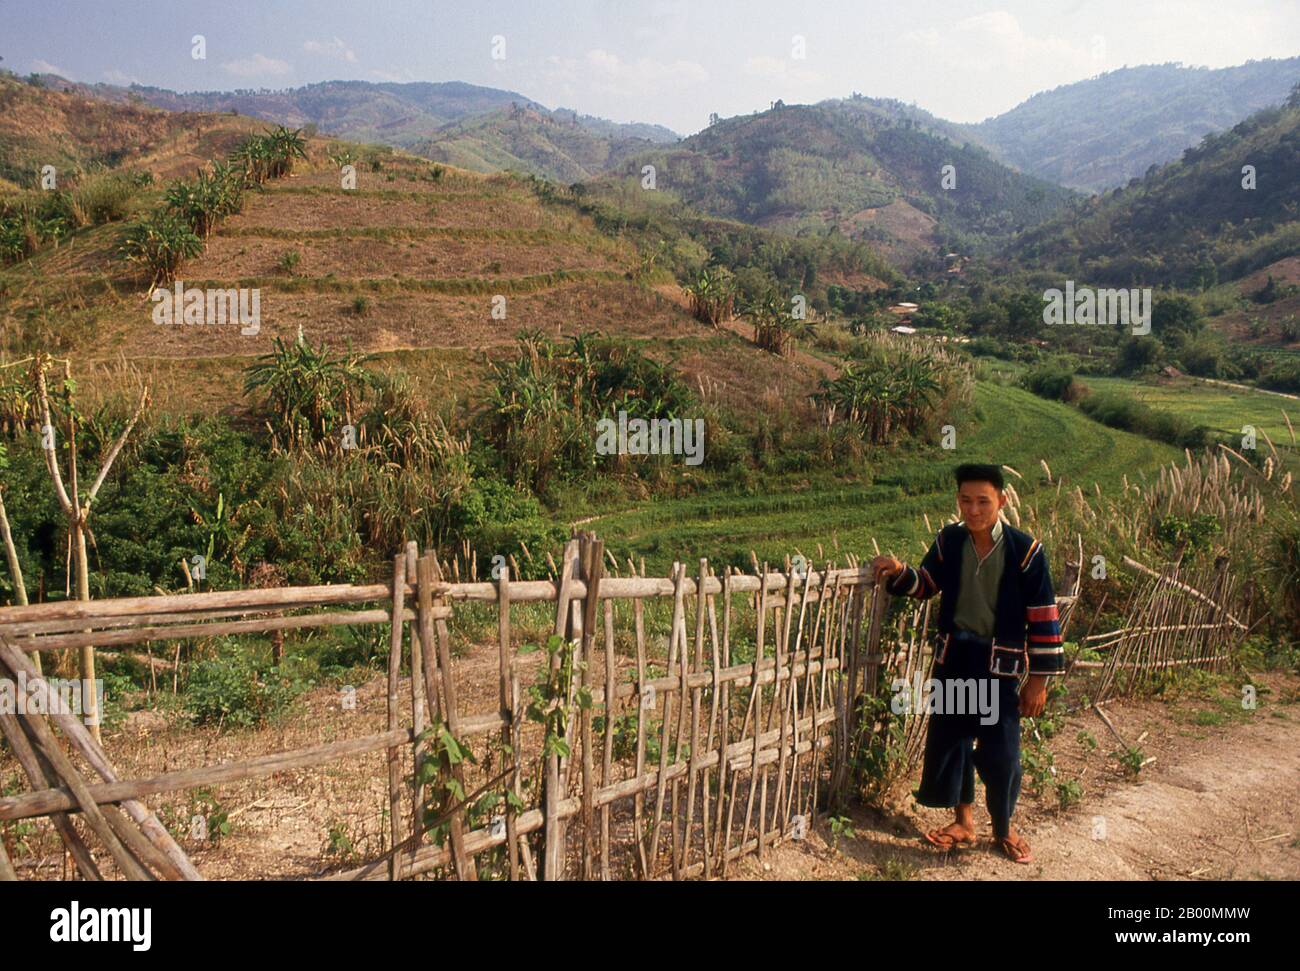 Thailandia: Lahu contadino, Chiang Rai. I Lahu (Ladhulsi o Kawzhawd; la Hủ) sono un gruppo etnico del Sud-est asiatico e della Cina. Sono uno dei 56 gruppi etnici ufficialmente riconosciuti dalla Repubblica popolare Cinese, dove circa 450,000 vivono nella provincia di Yunnan. Circa 150,000 vivono in Birmania. In Thailandia, Lahu è una delle sei principali tribù di colline; la loro popolazione è stimata intorno a 100,000. Il Tai spesso si riferisce a loro dall'esonimo 'Mussur' o cacciatore. Circa 10,000 vivono in Laos. Sono uno dei 54 gruppi etnici del Vietnam, dove circa 1,500 vivono nella provincia di Lai Chau. Foto Stock